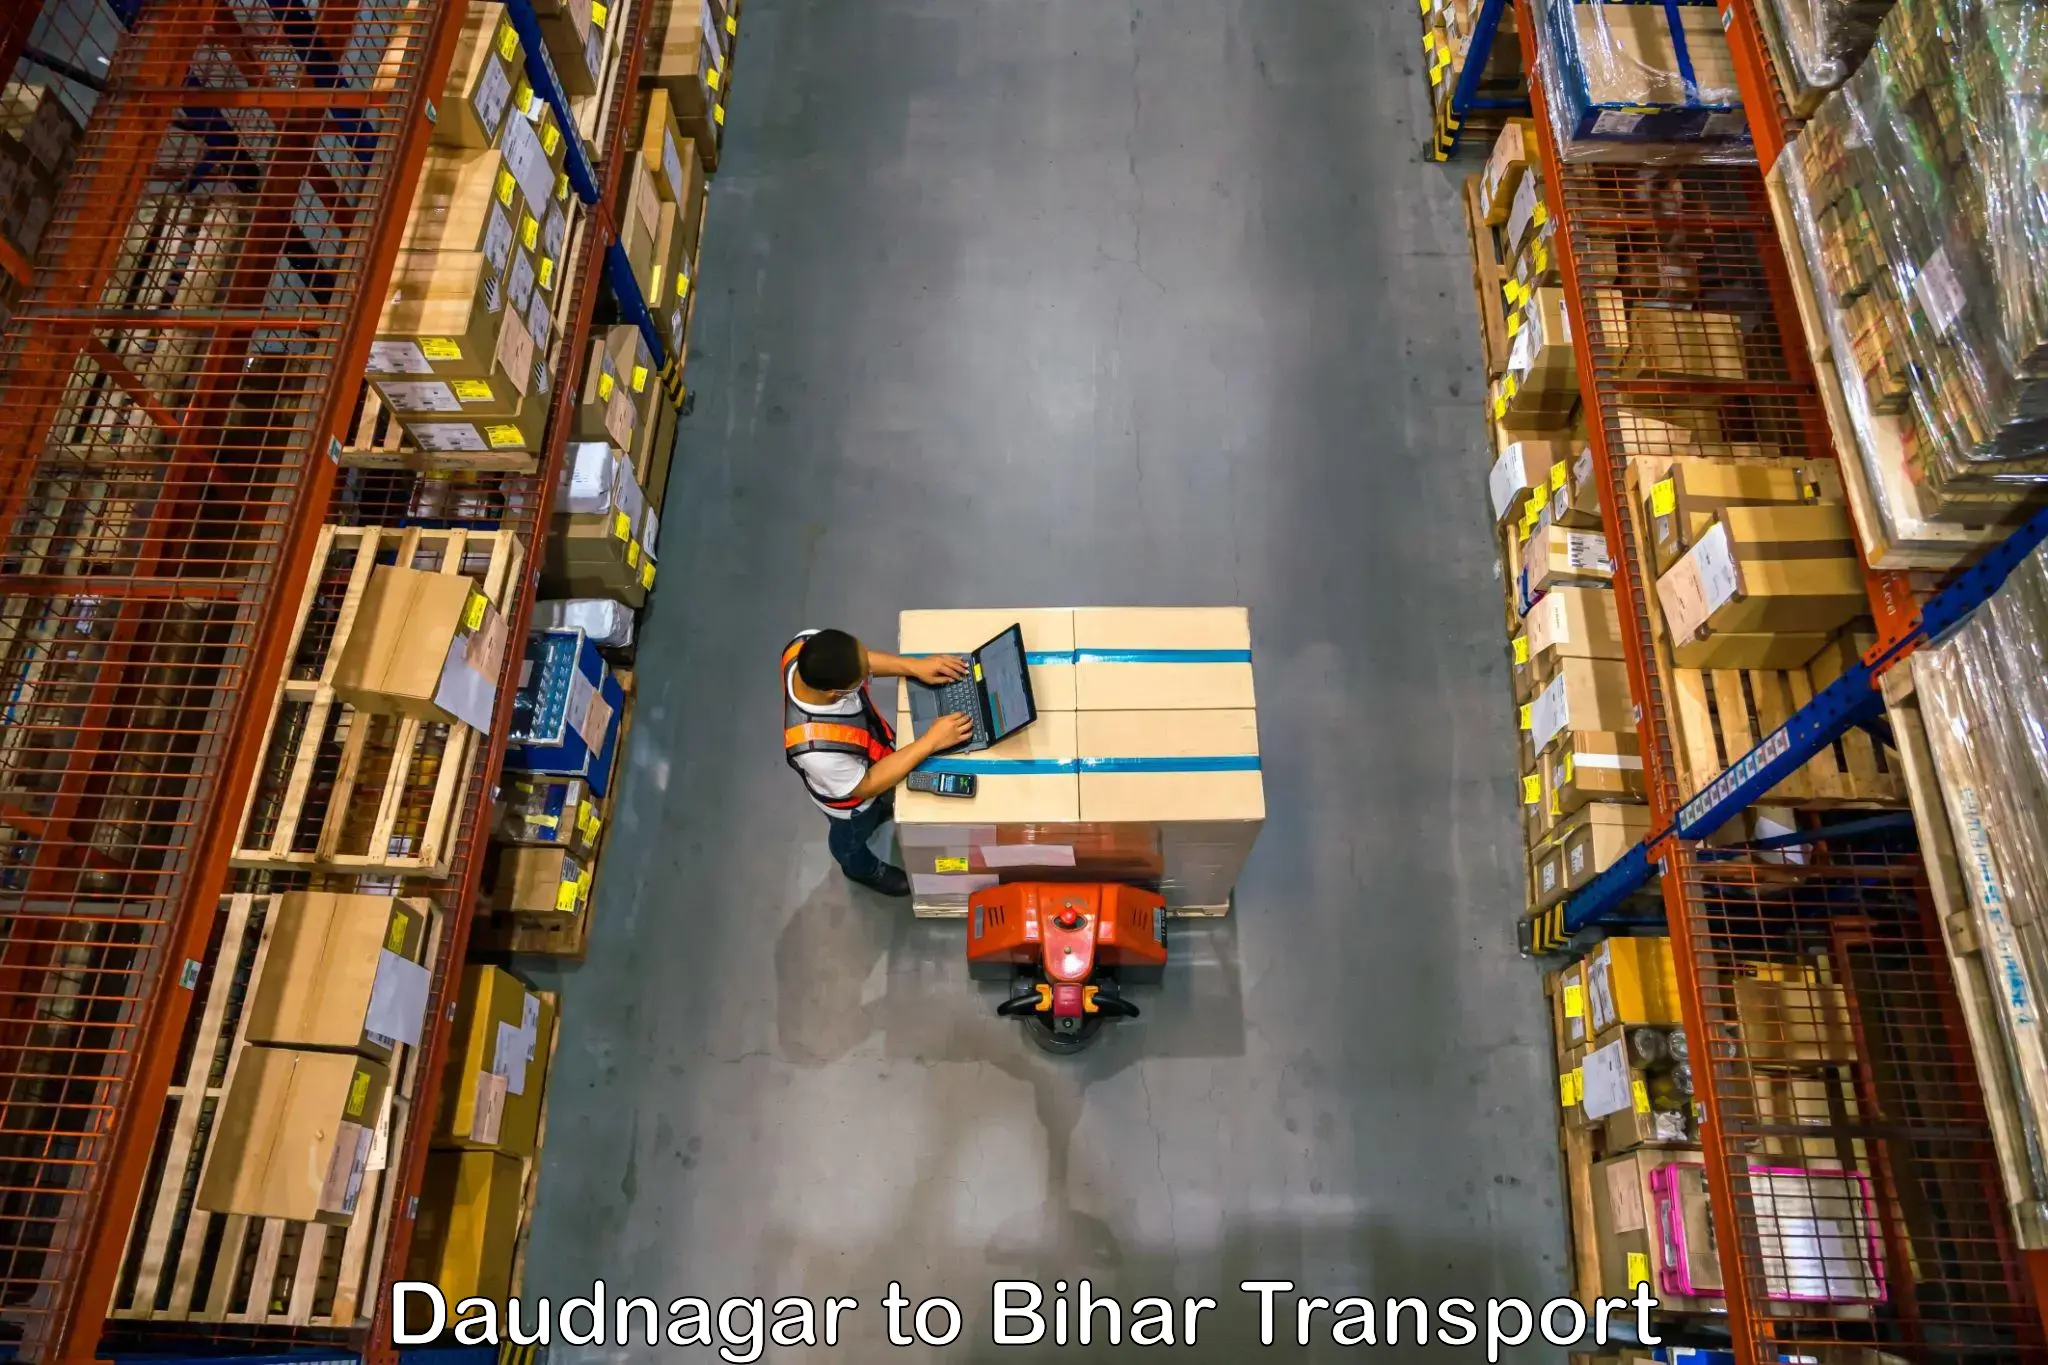 Air cargo transport services Daudnagar to Marhowrah